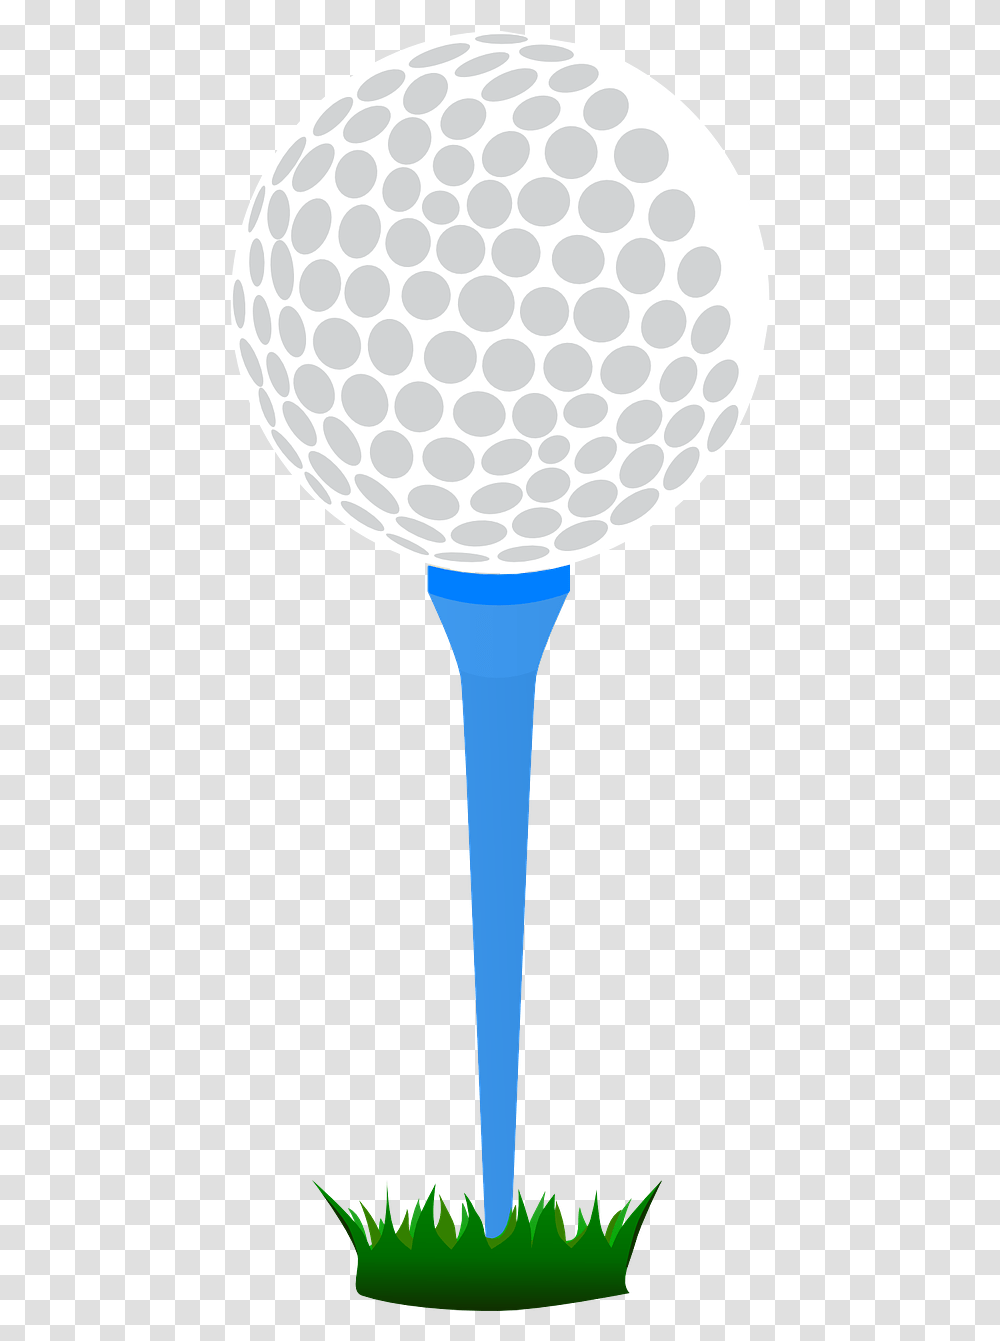 Golf Ball Vector Vector Golf Tee, Sport, Sports, Lamp, Glass Transparent Png